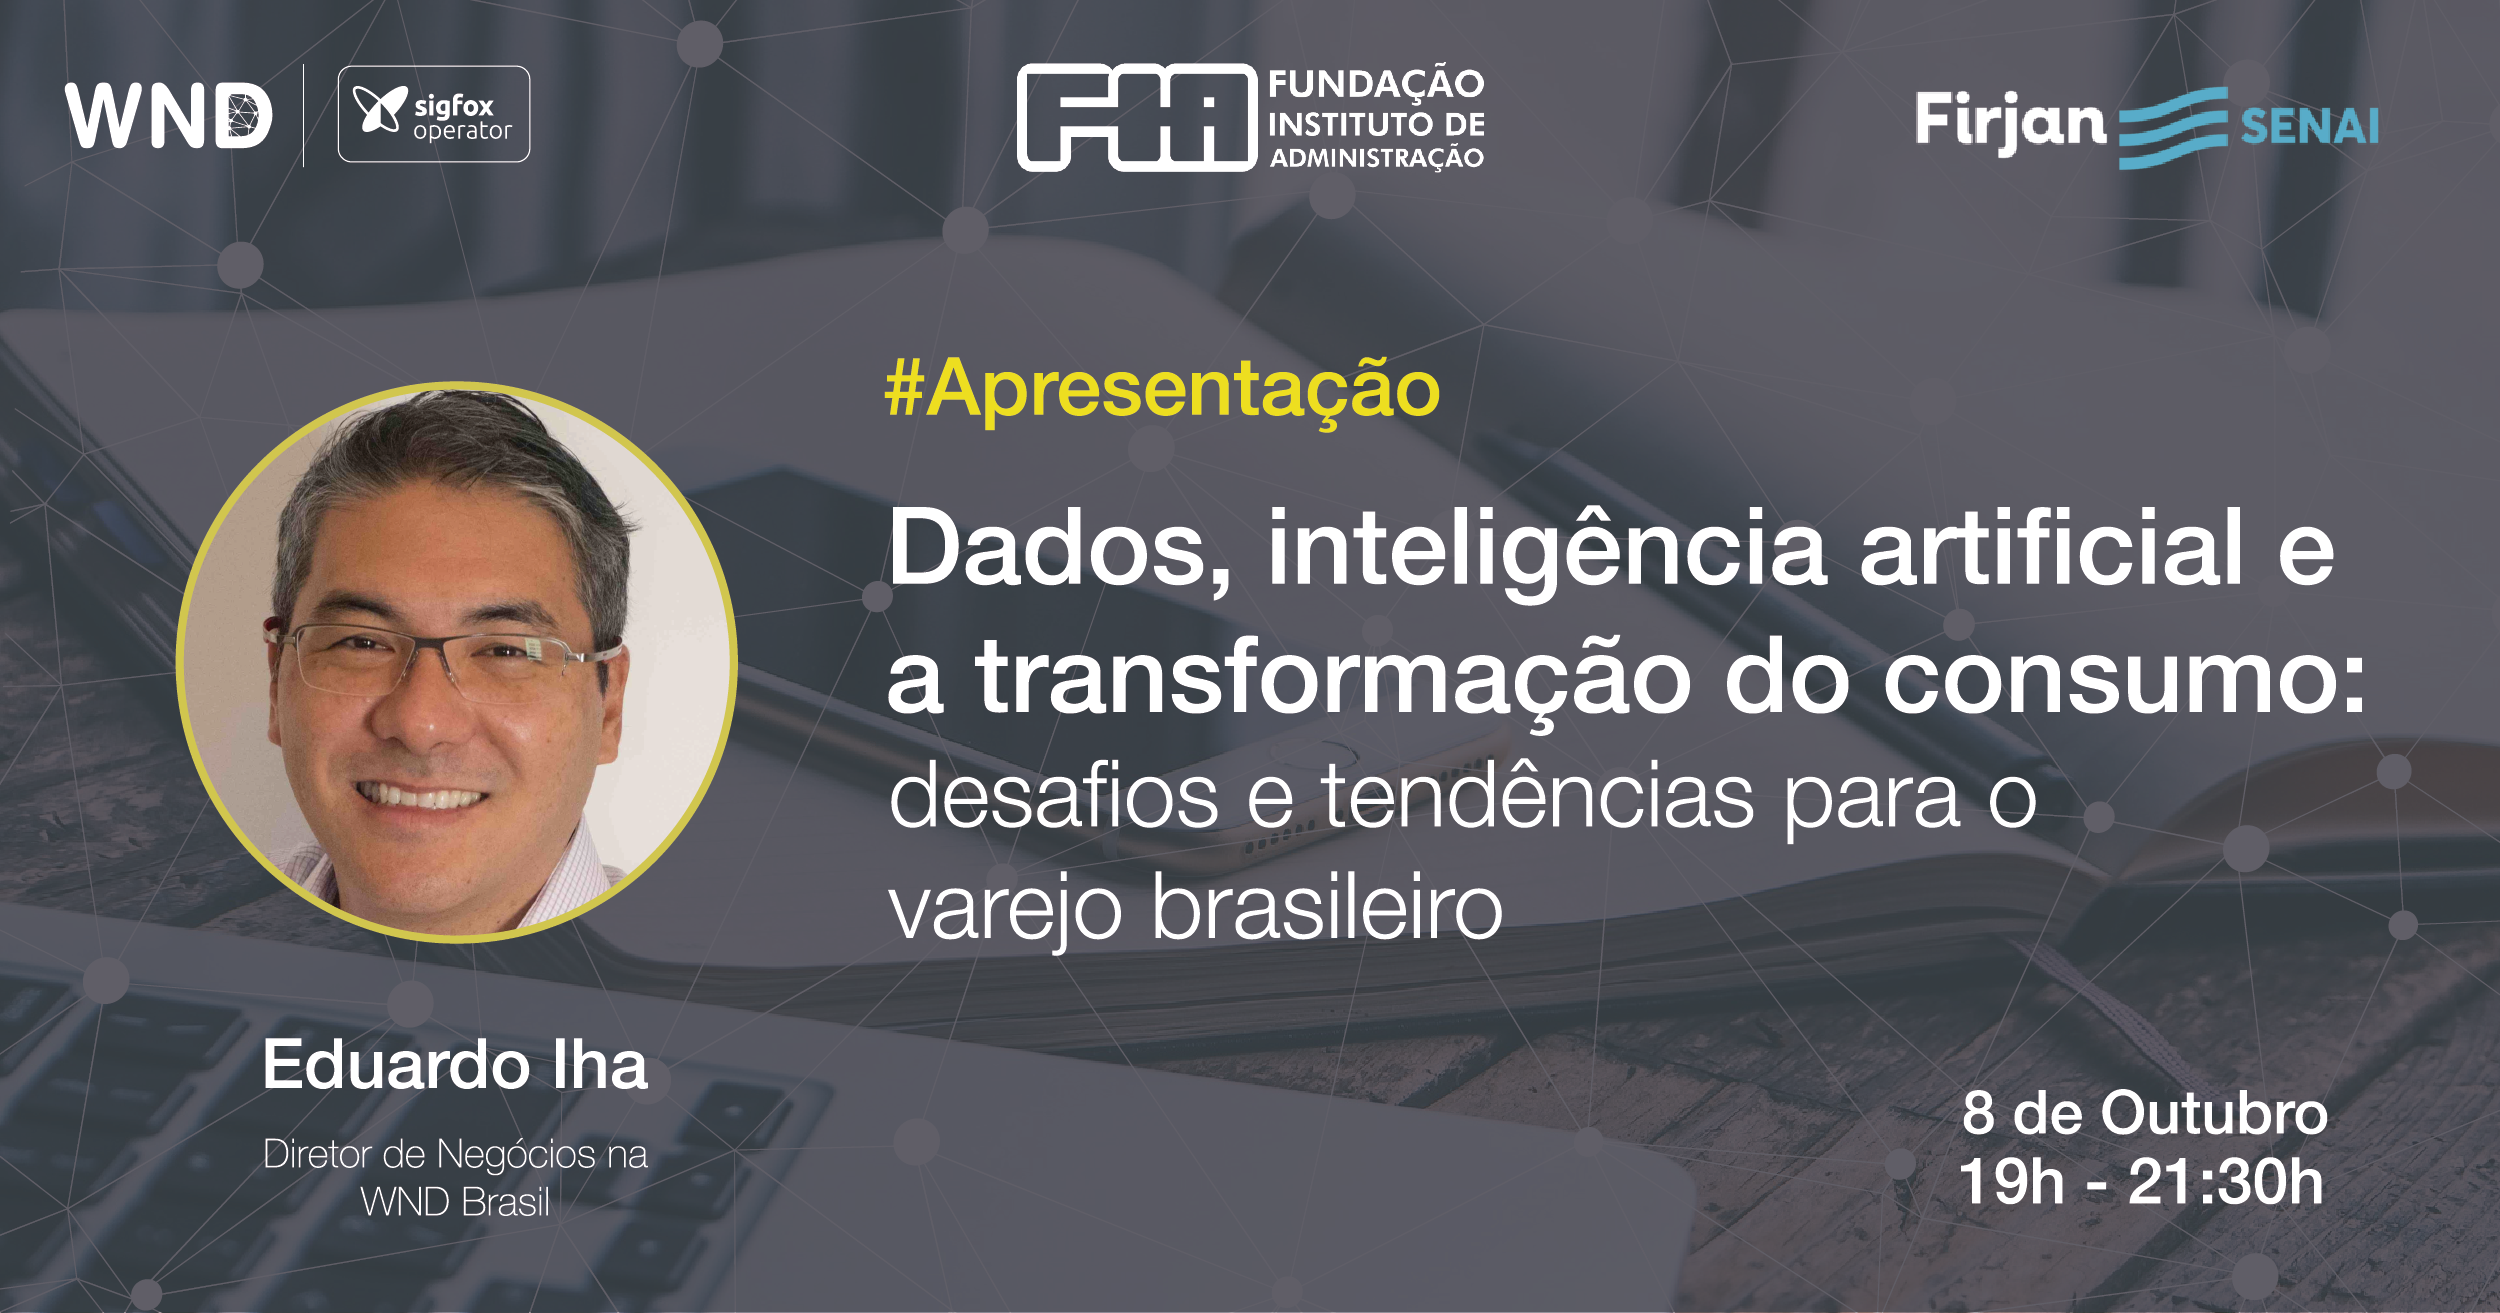 @Sigfox: Eduardo Iha, Diretor de Negócios da WND Brasil, fará apresentação sobre as aplicações IoT no mercado de varejo em evento na Casa Firjan